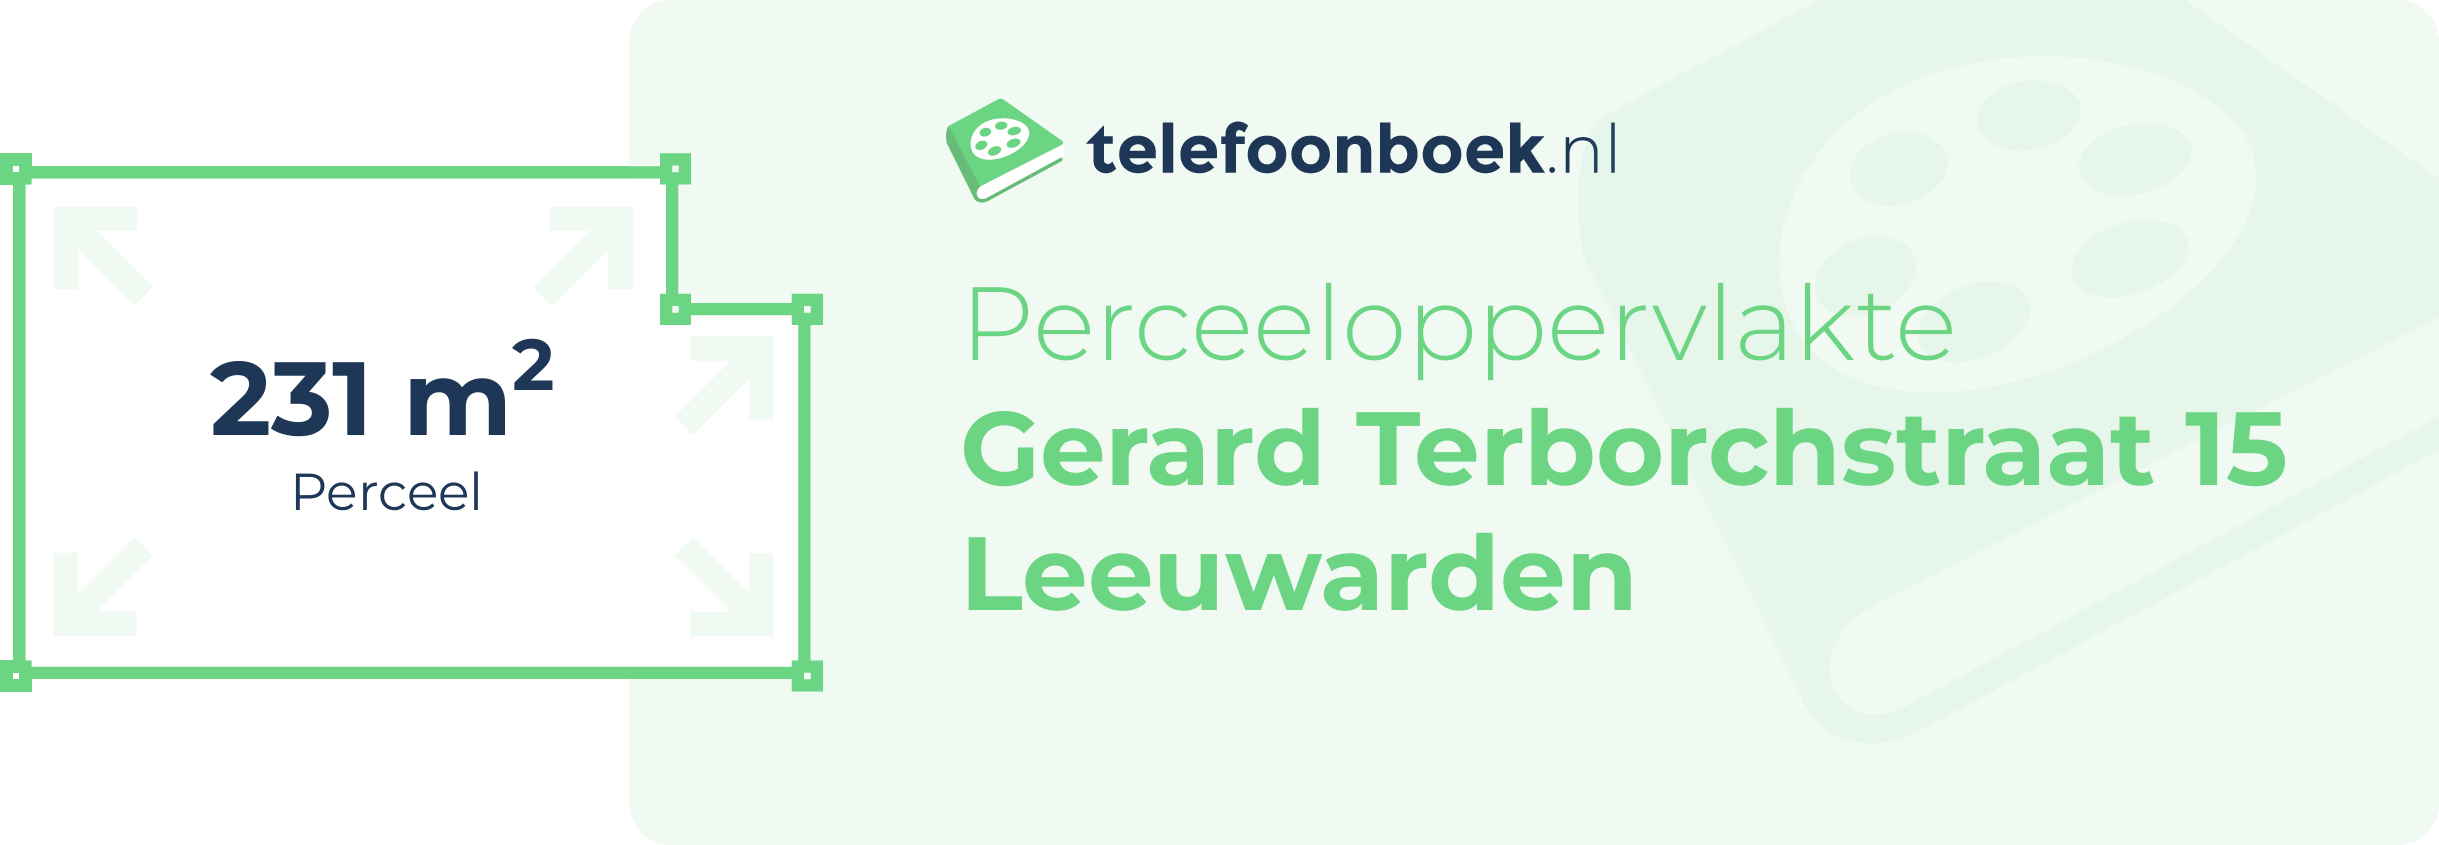 Perceeloppervlakte Gerard Terborchstraat 15 Leeuwarden